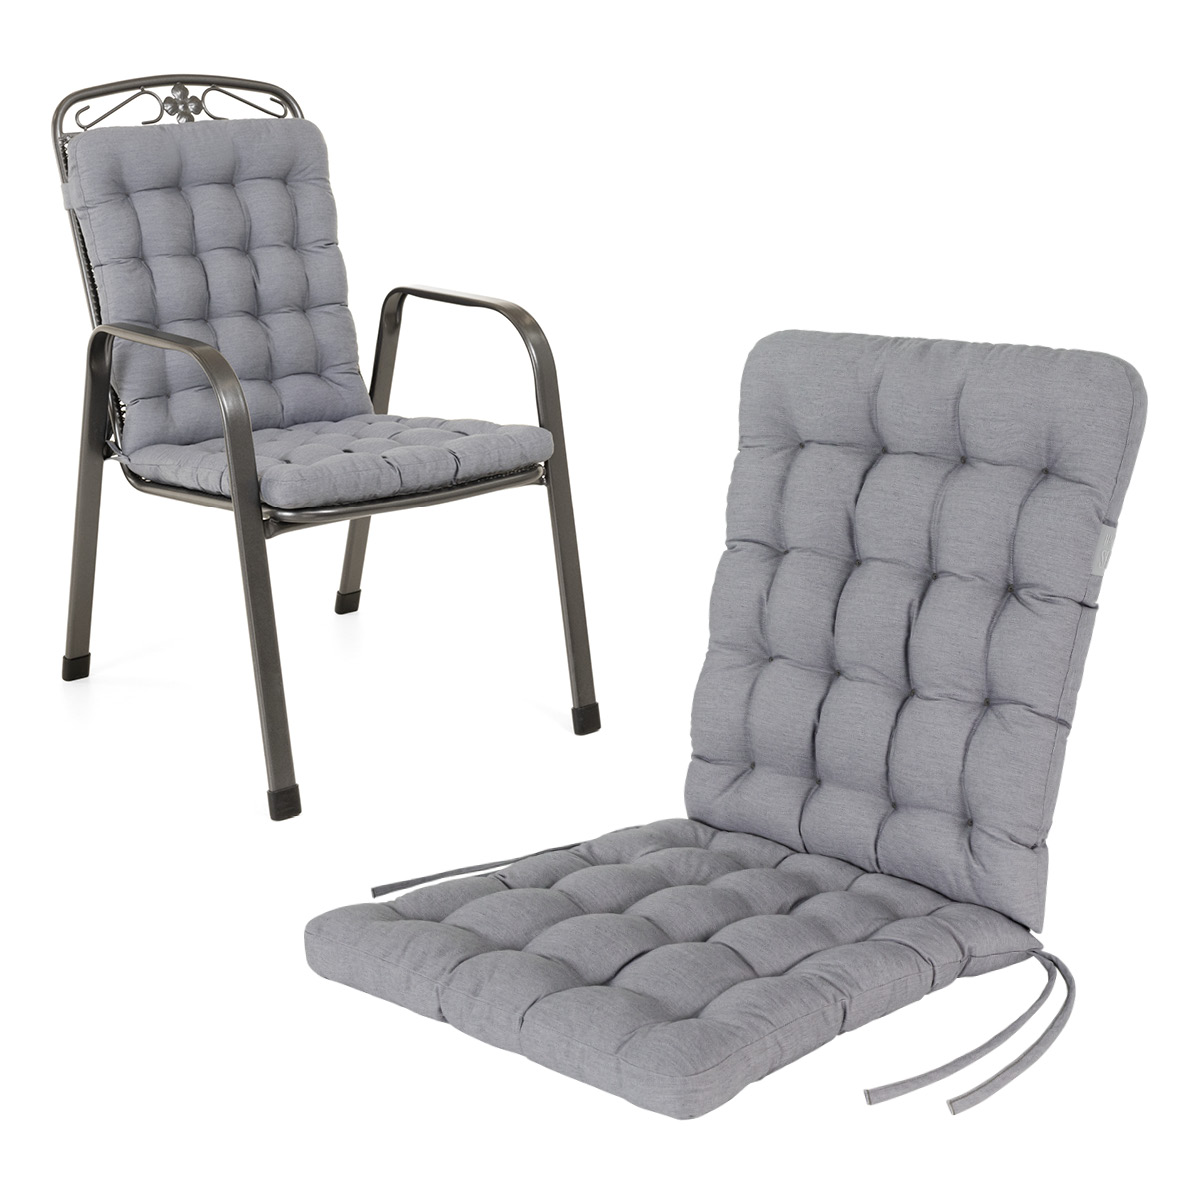 Cuscino per sedia con schienale basso 100x48 cm | Grigio chiaro